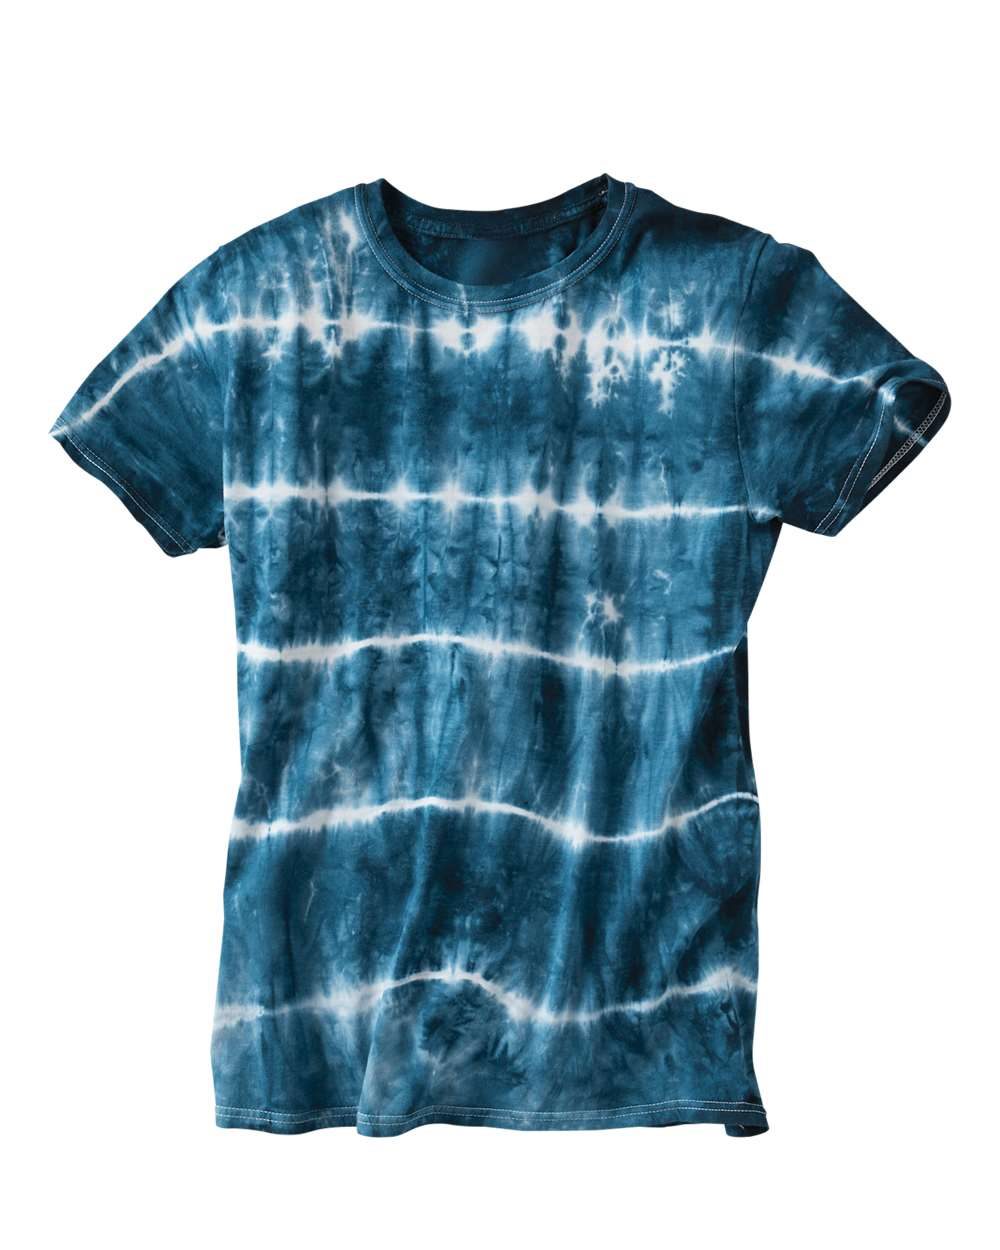 Dyenomite 640SB - Shibori Tie-Dyed T-Shirt